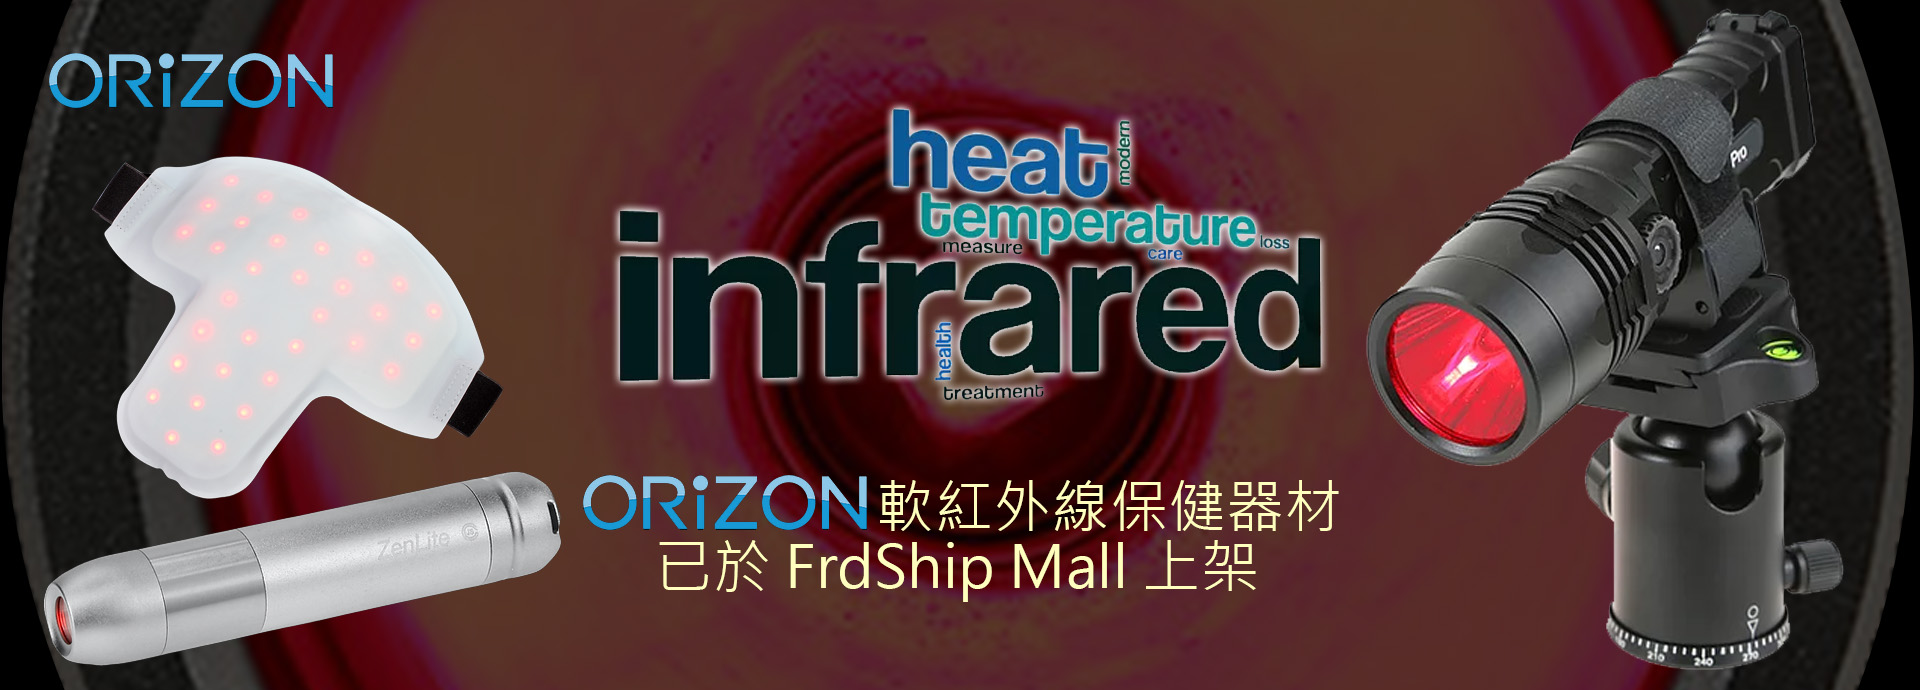 軟紅外線保健器材﹐已於 FrdShip Mall 上架